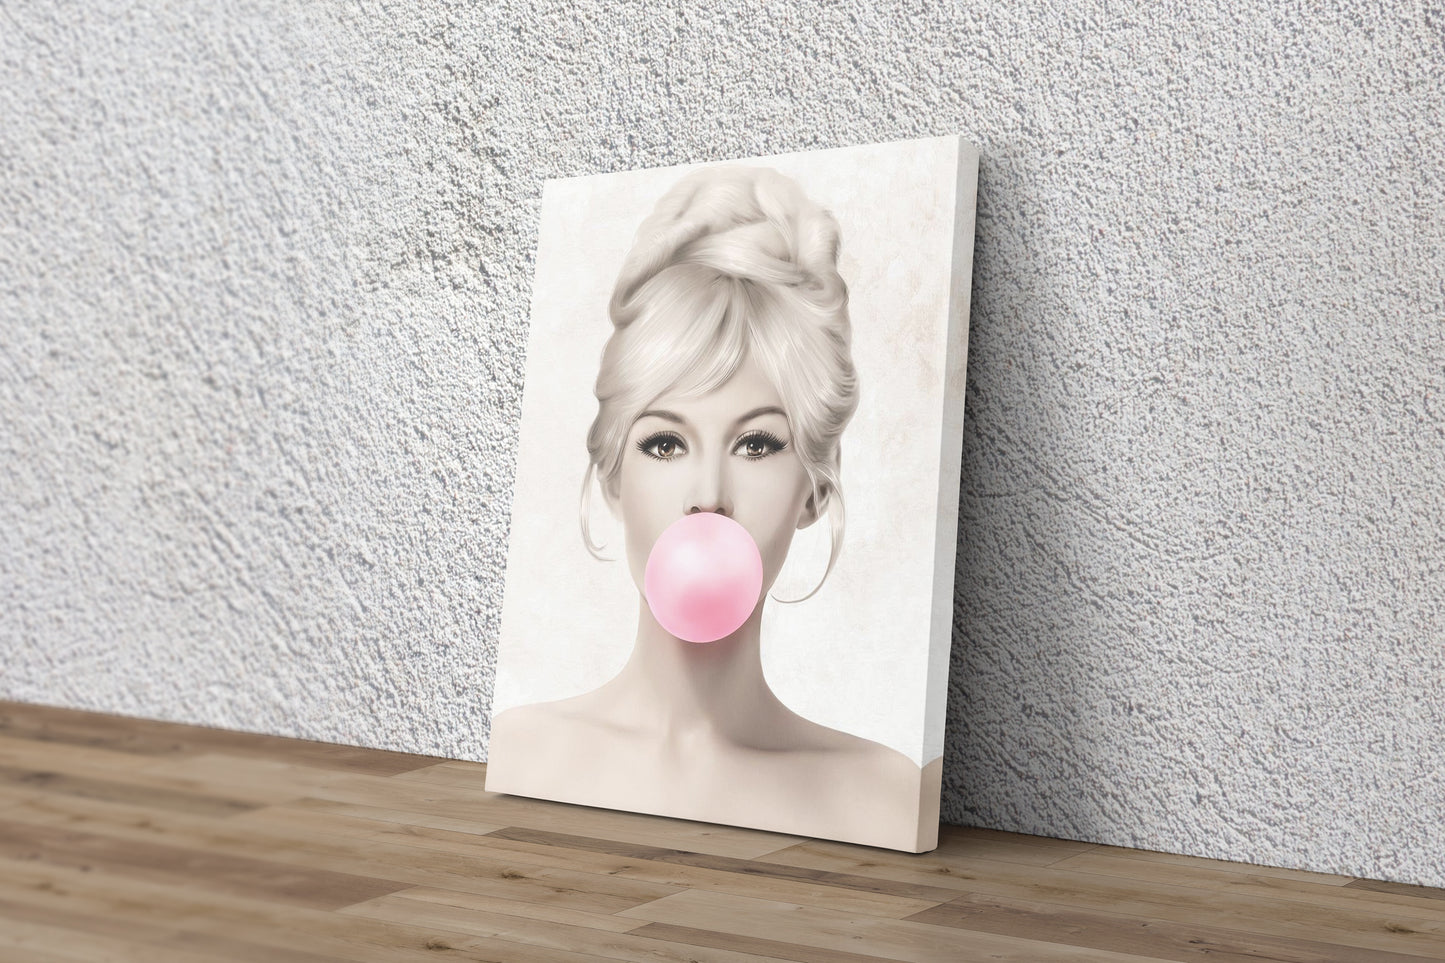 Brigitte Bardot Gum Poster Actress Singer Hand Made Posters Canvas Print Wall Art Home Decor